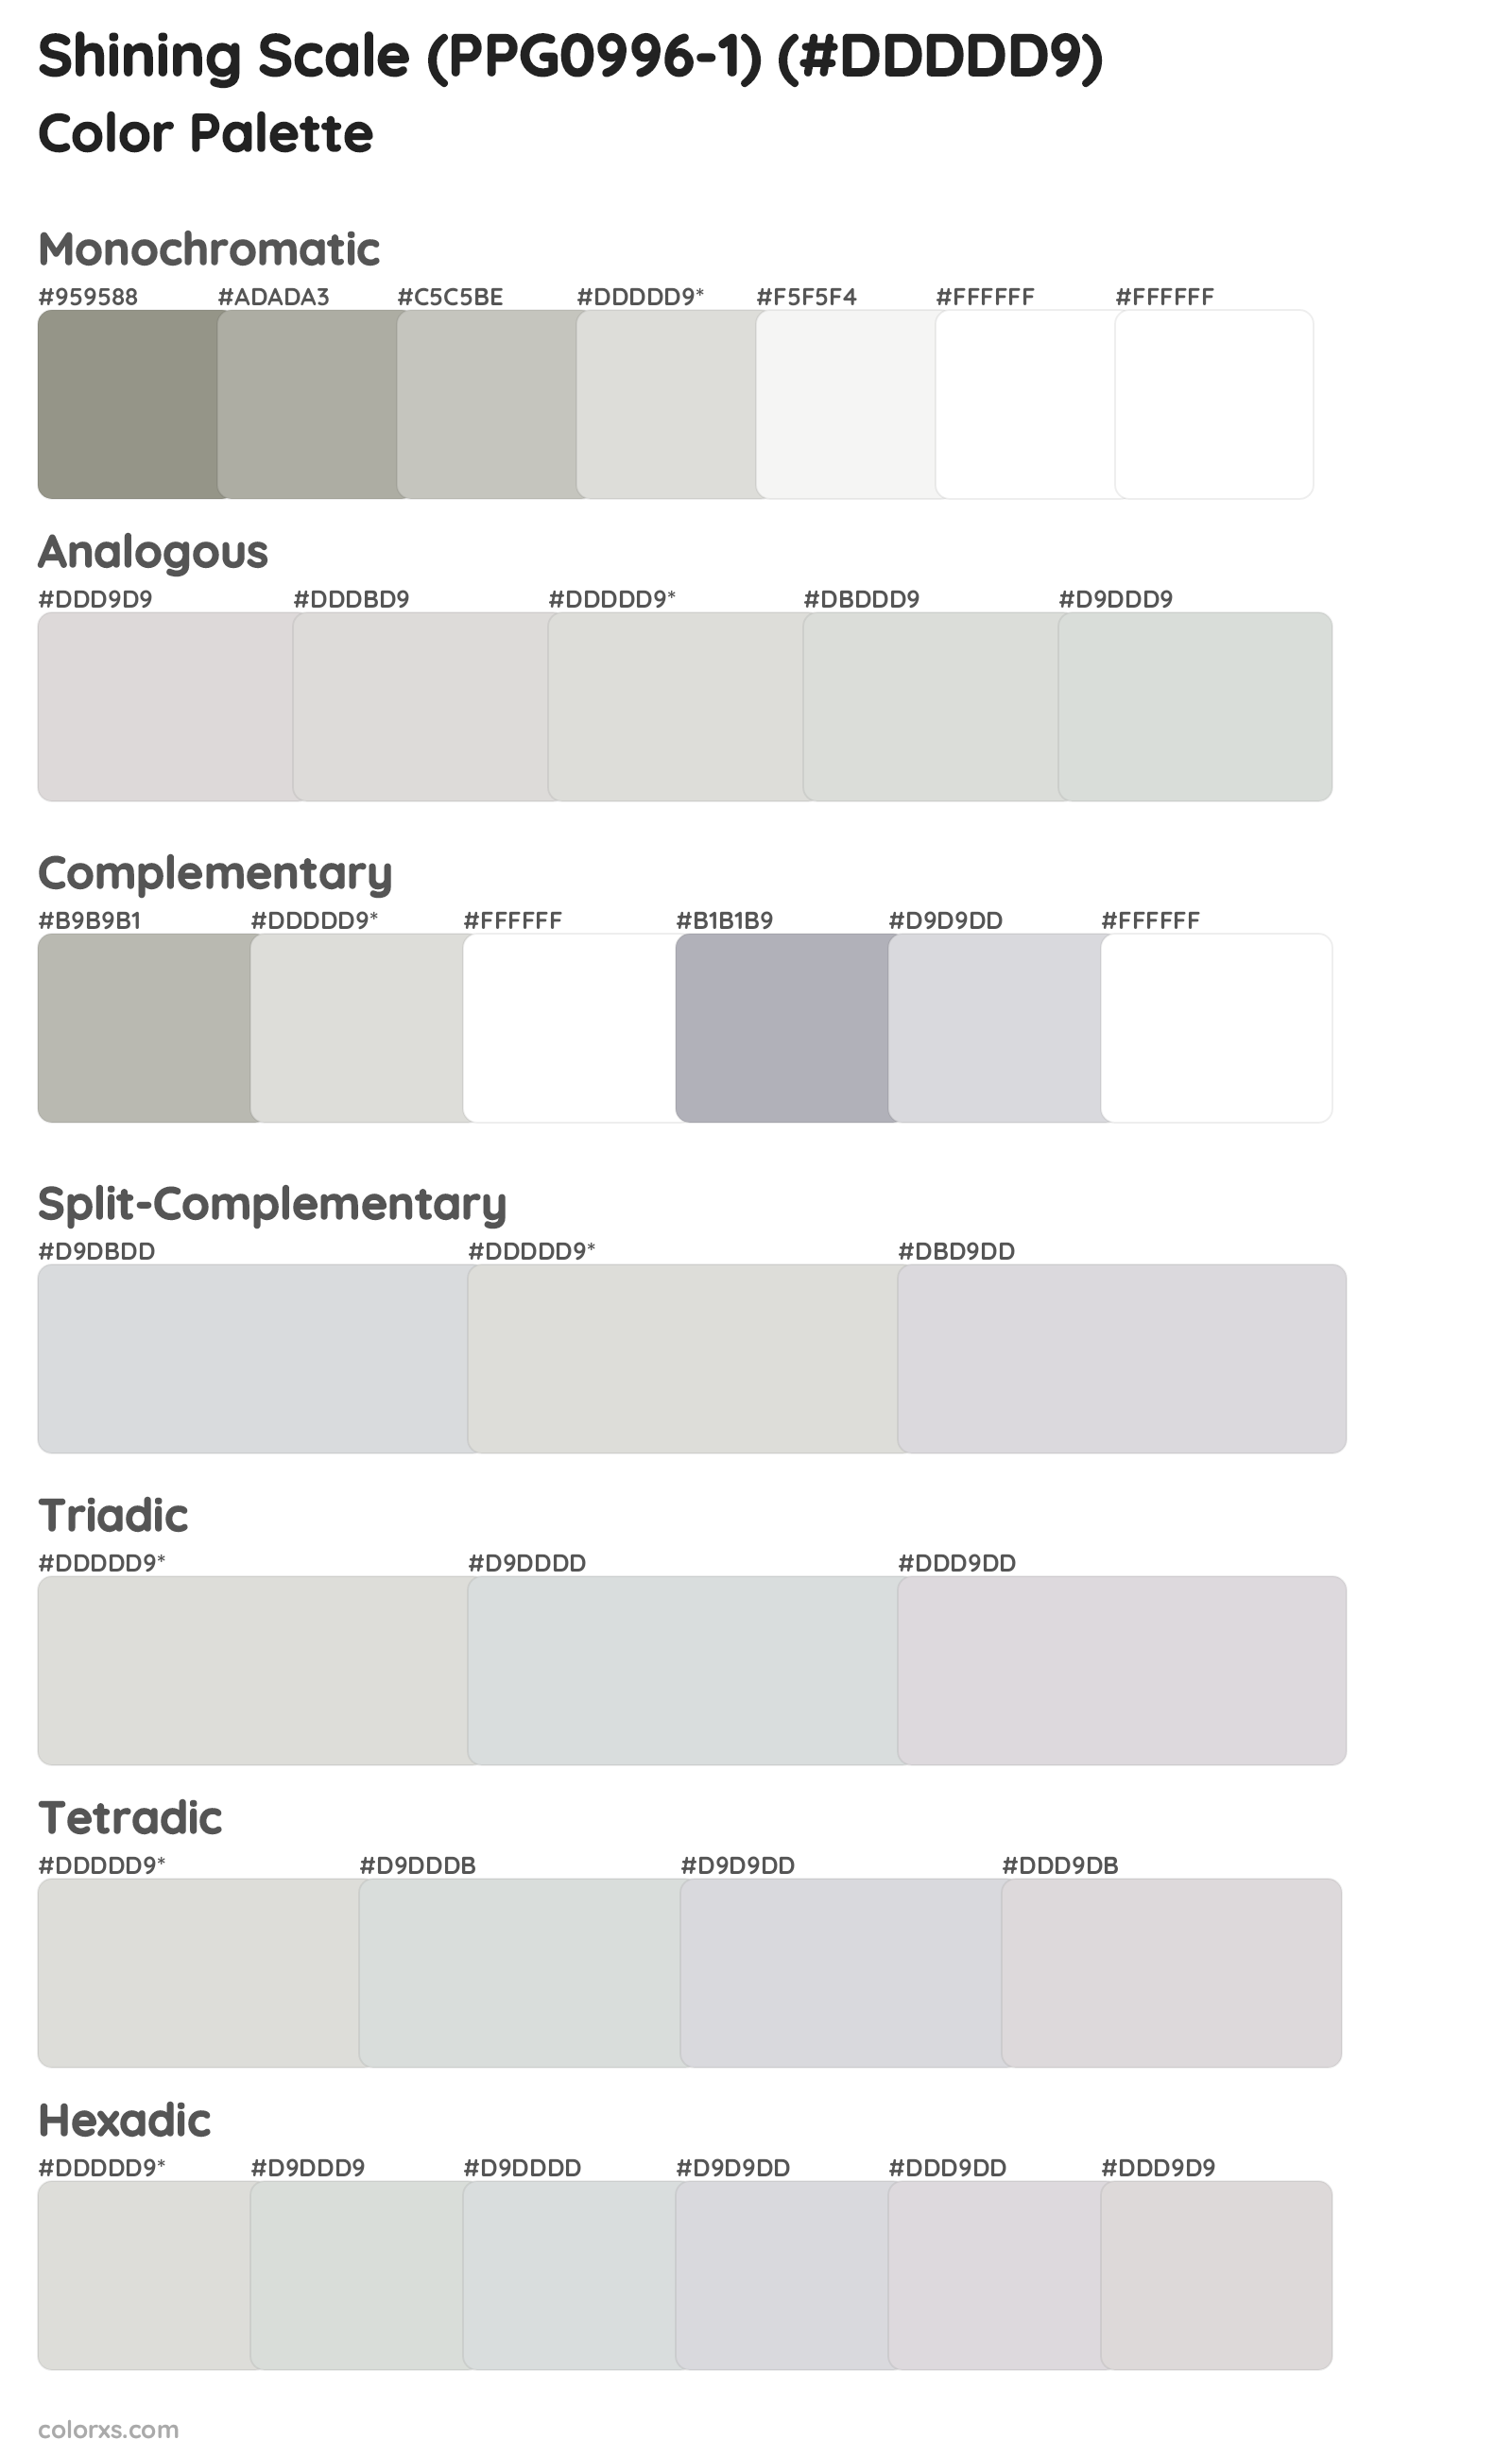 Shining Scale (PPG0996-1) Color Scheme Palettes